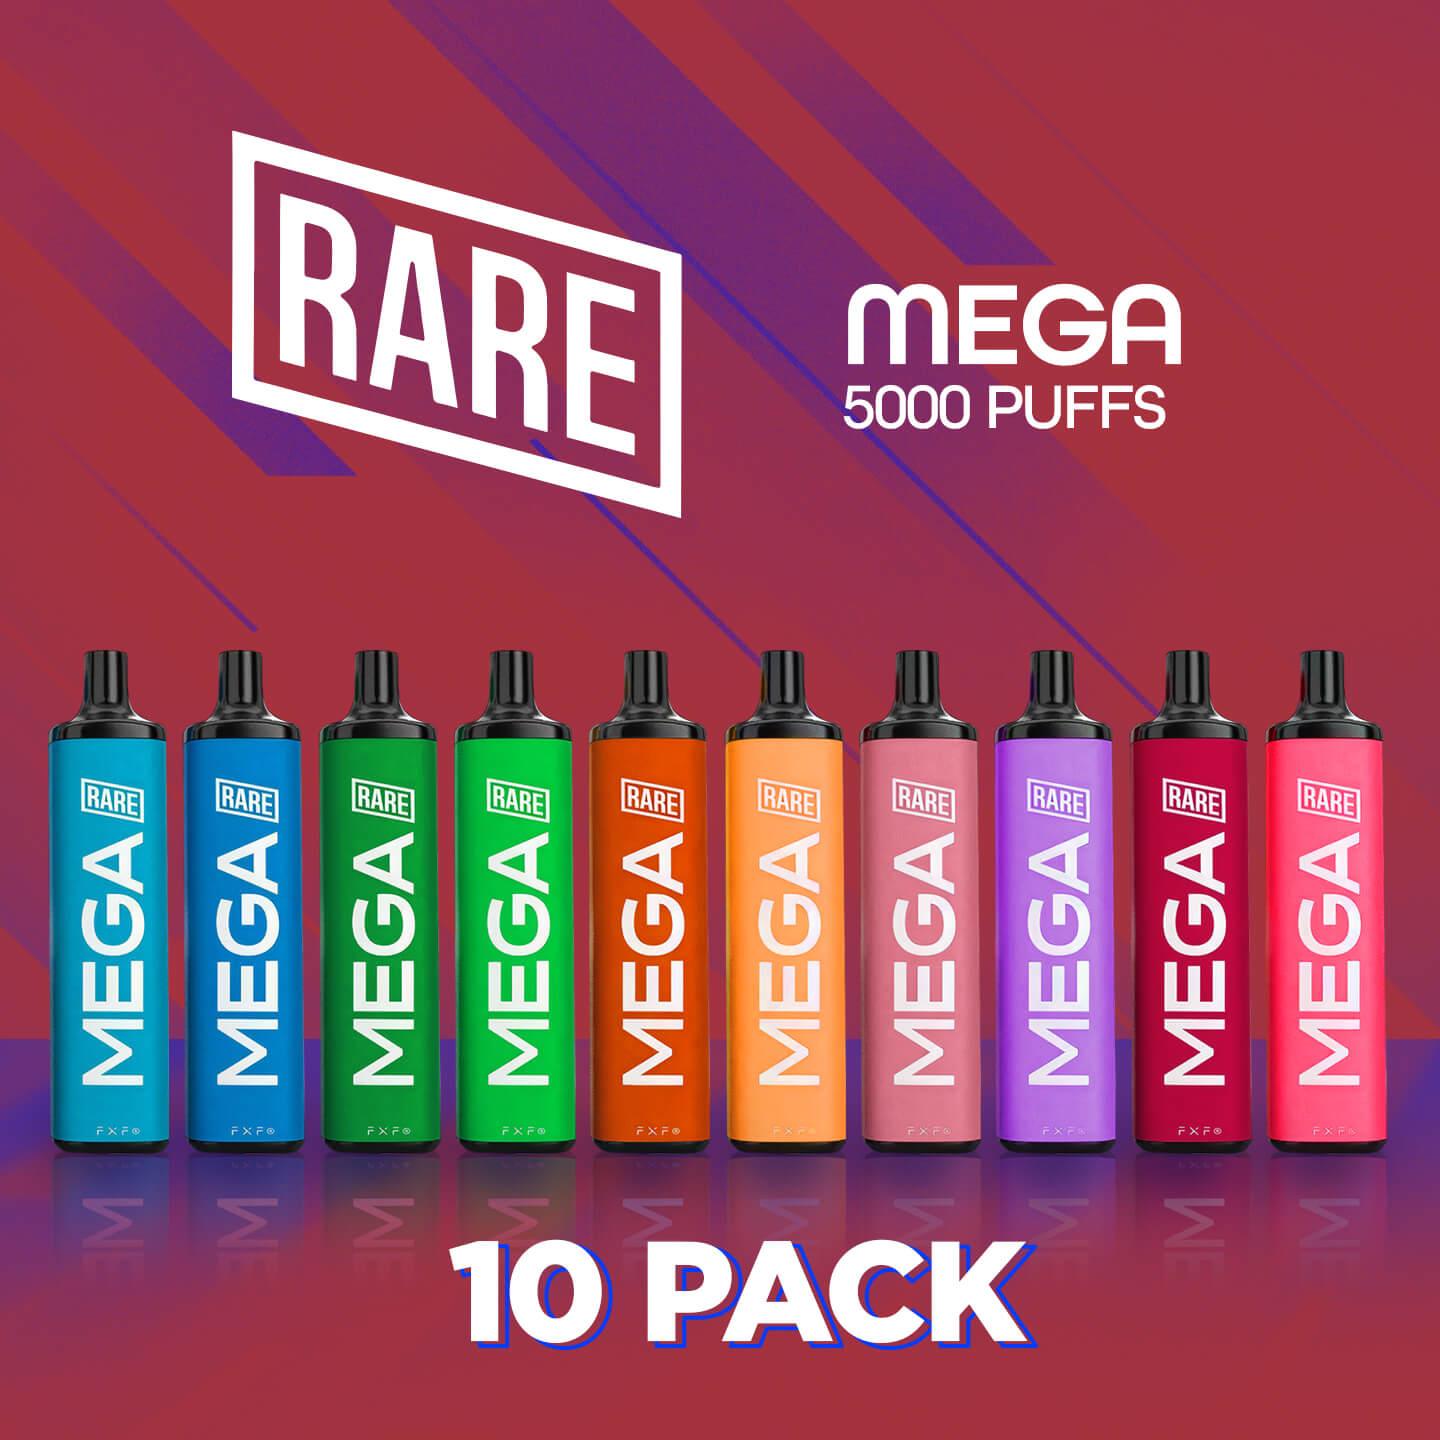 rare-mega-10-pack_e68da3aa-ca3d-4fc8-a134-b0b27a9394aa